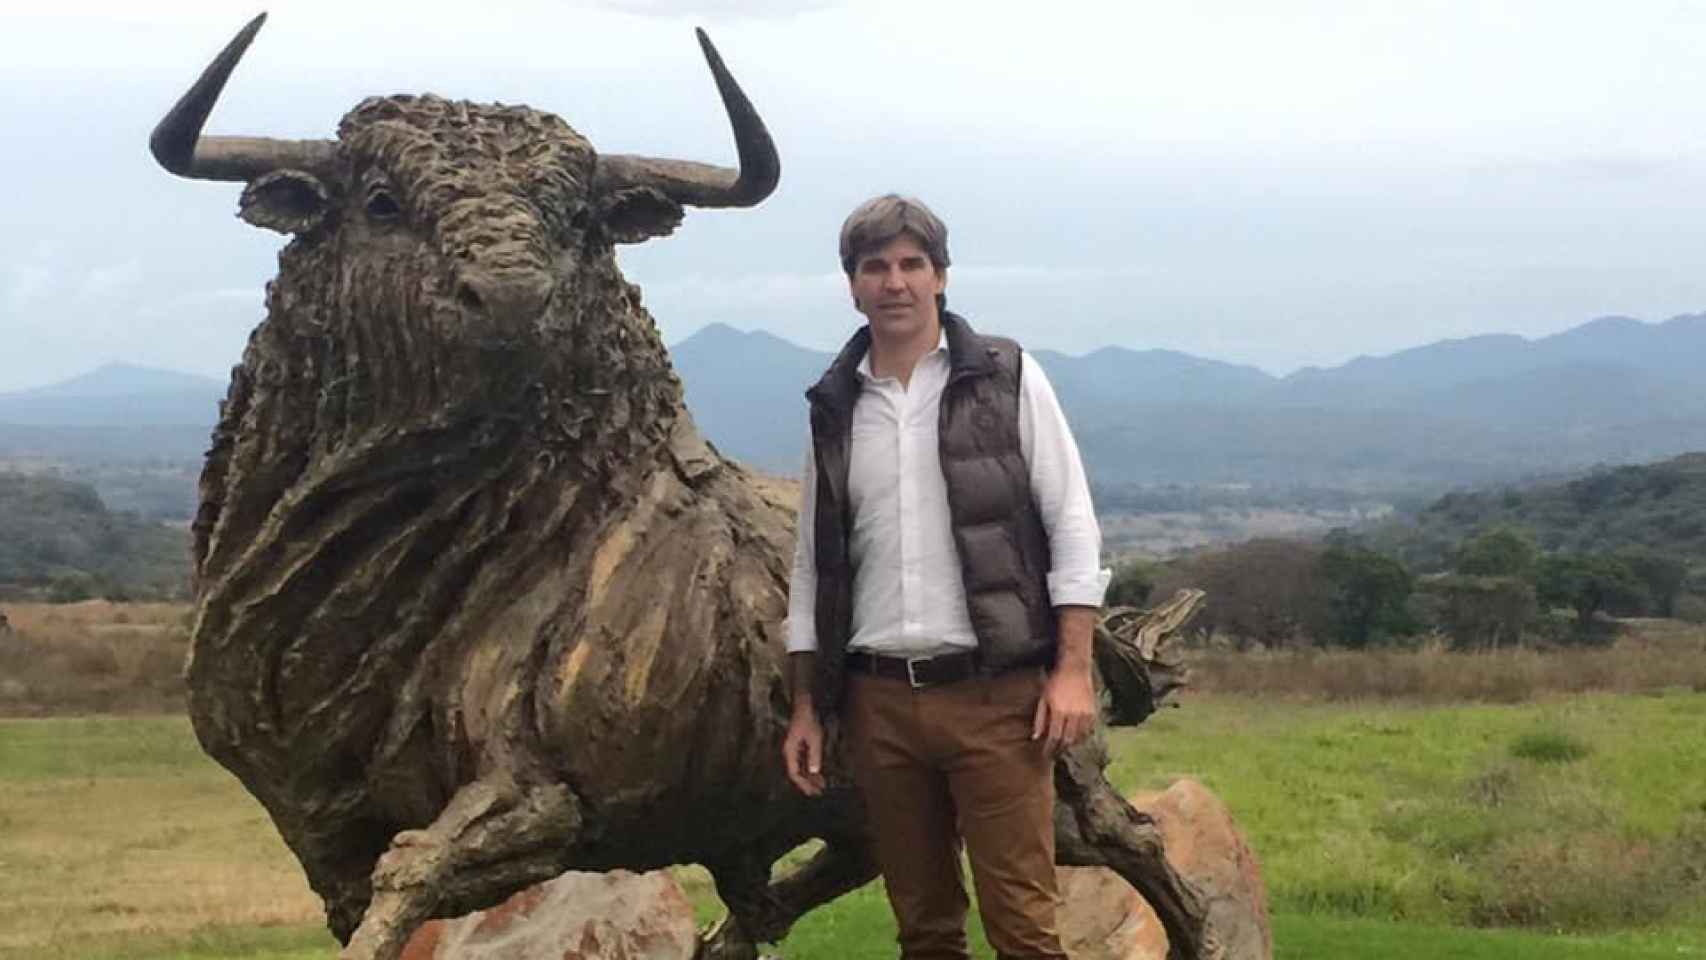 El empresaro Daniel Alcázar posando con la escultura de un toro en el año 2015.